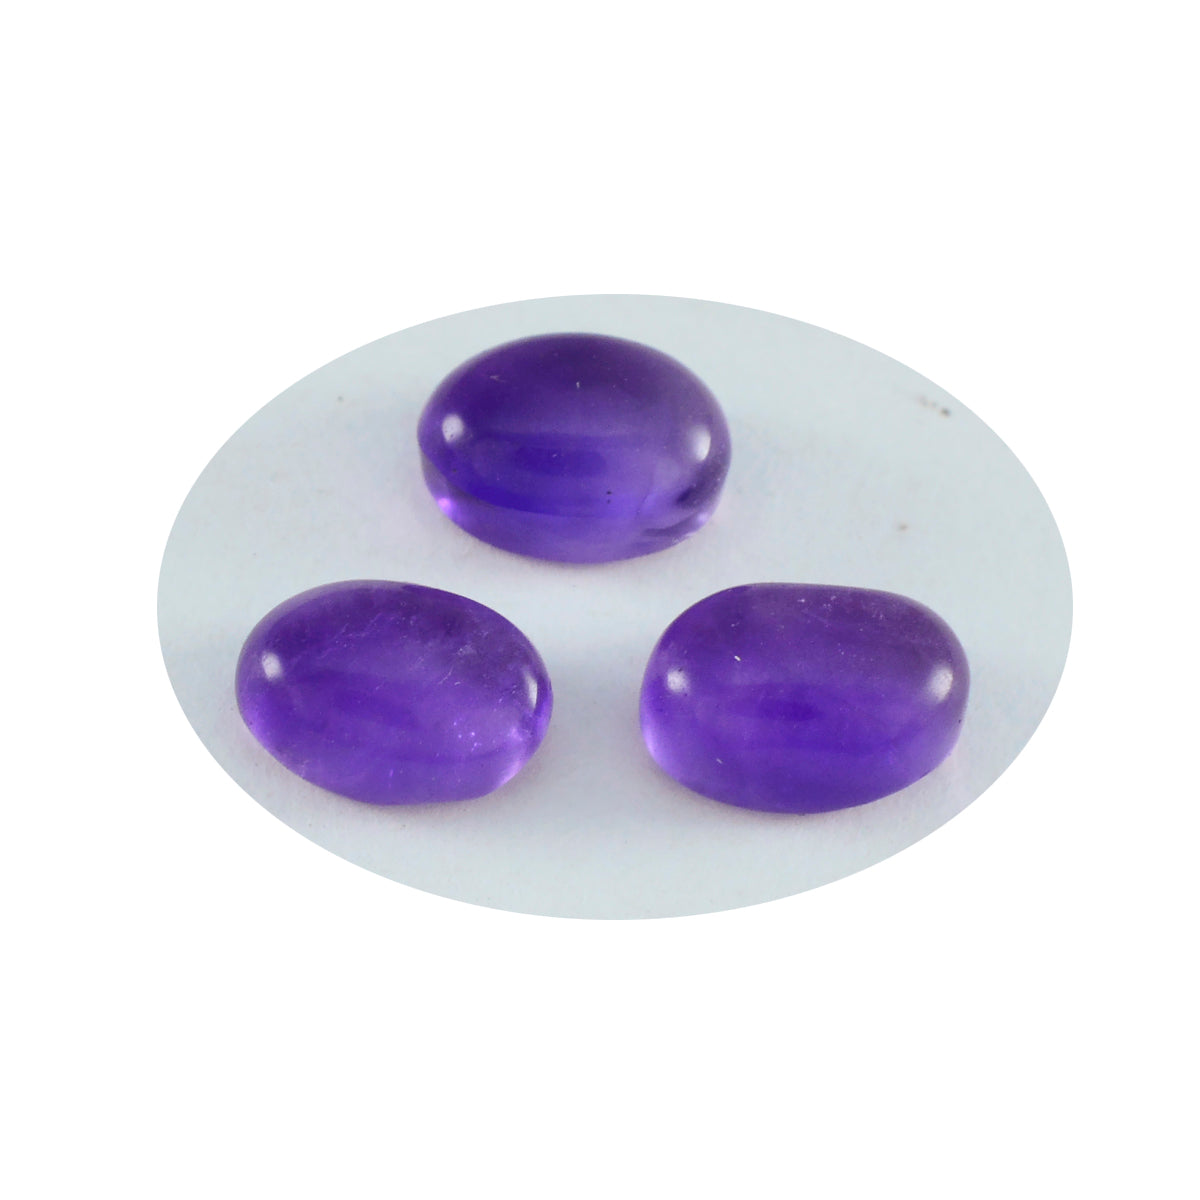 Riyogems 1 Stück lila Amethyst-Cabochon, 7 x 9 mm, ovale Form, attraktive, hochwertige lose Edelsteine